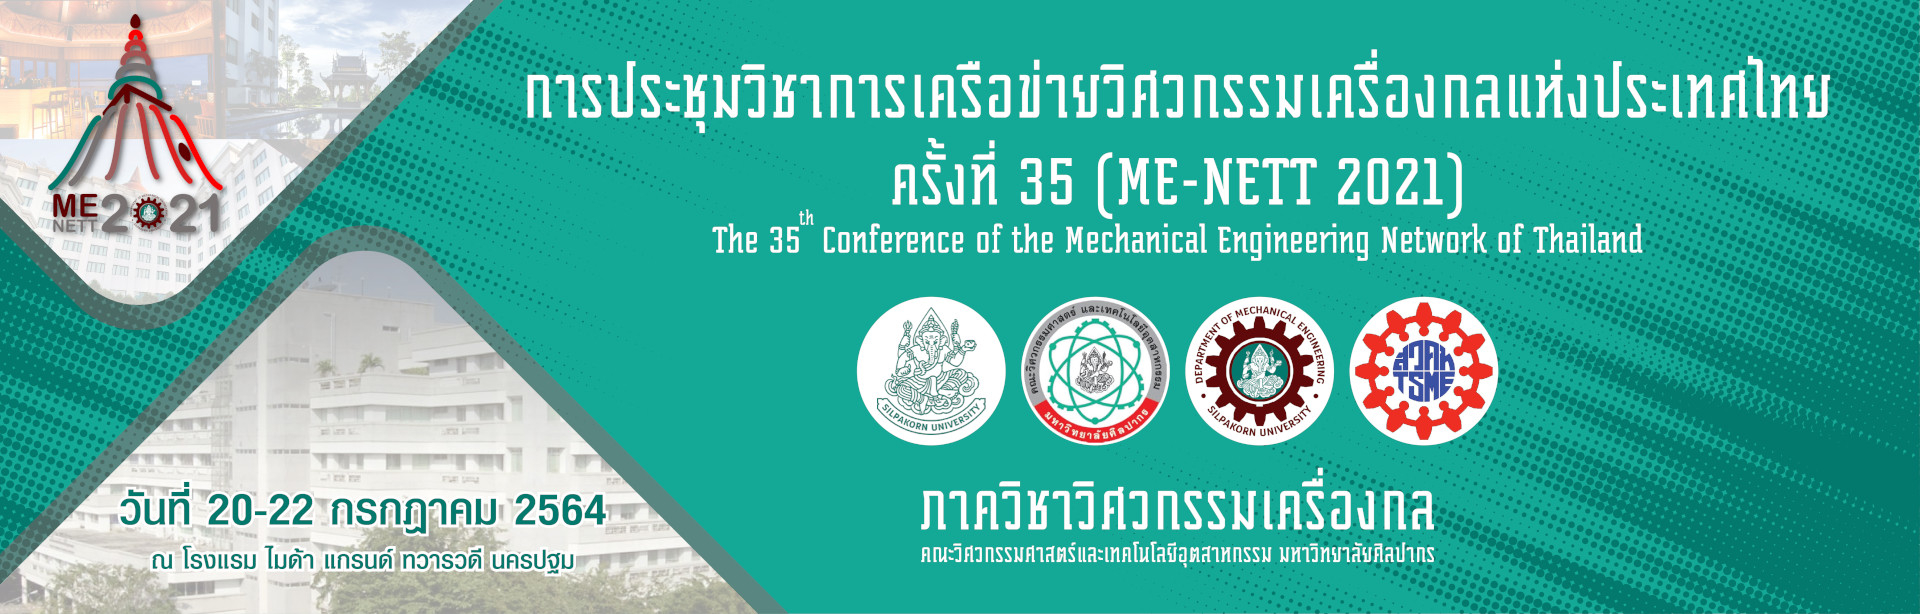 ประชุมวิชาการเครือข่ายวิศวกรรมเครื่องกลแห่งประเทศไทย ครั้งที่ 35 (ME-NETT 2021)